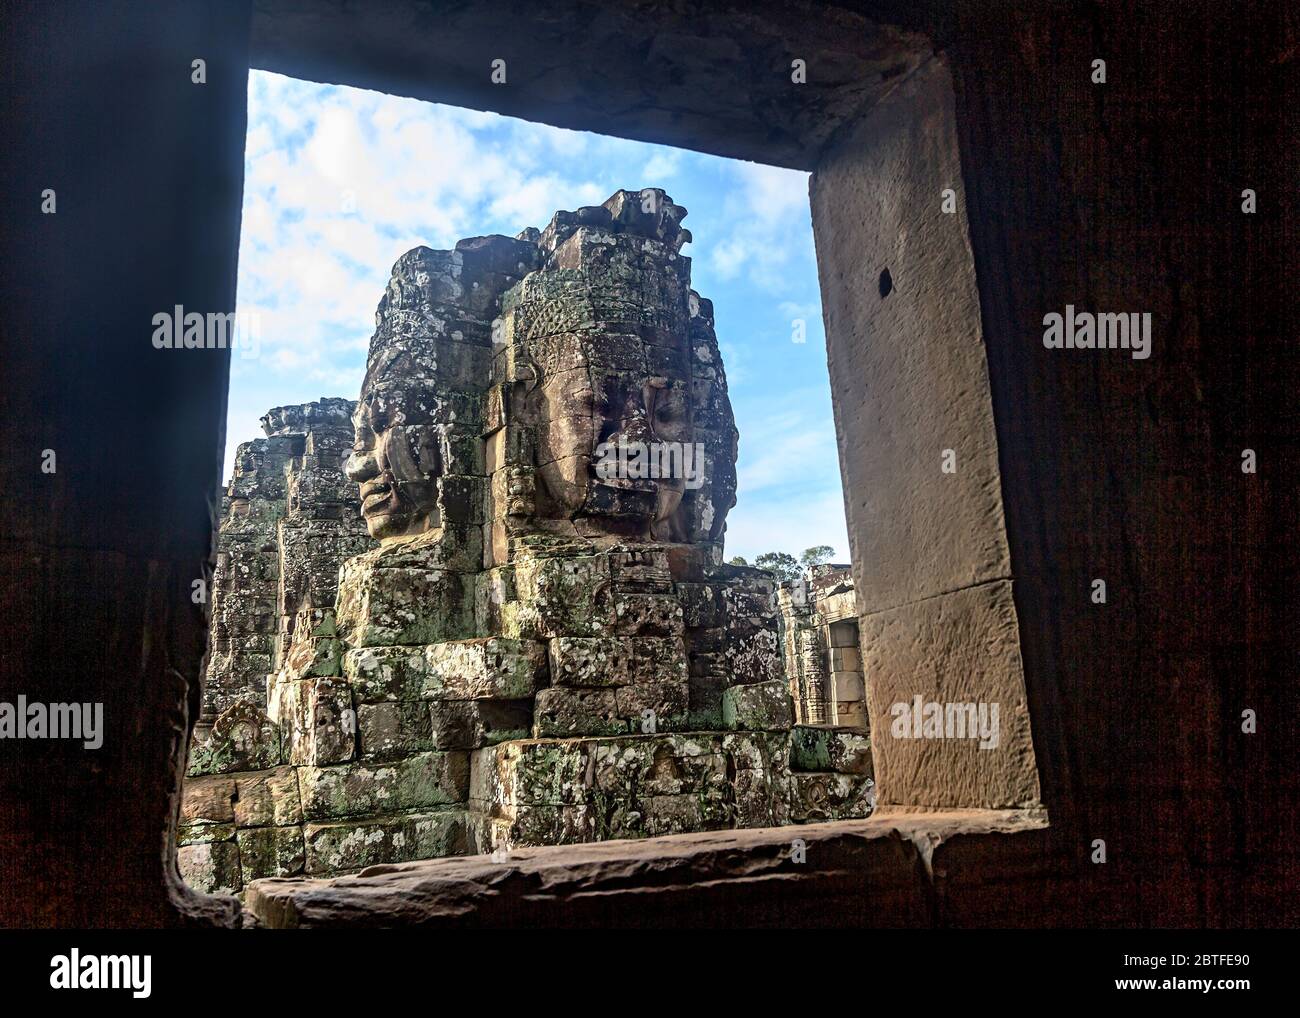 Der Bayon-Tempel ist ein reich dekorierter Khmer-Tempel in Angkor in Kambodscha. Erbaut im späten 12. Jahrhundert oder Anfang des 13. Jahrhunderts Stockfoto